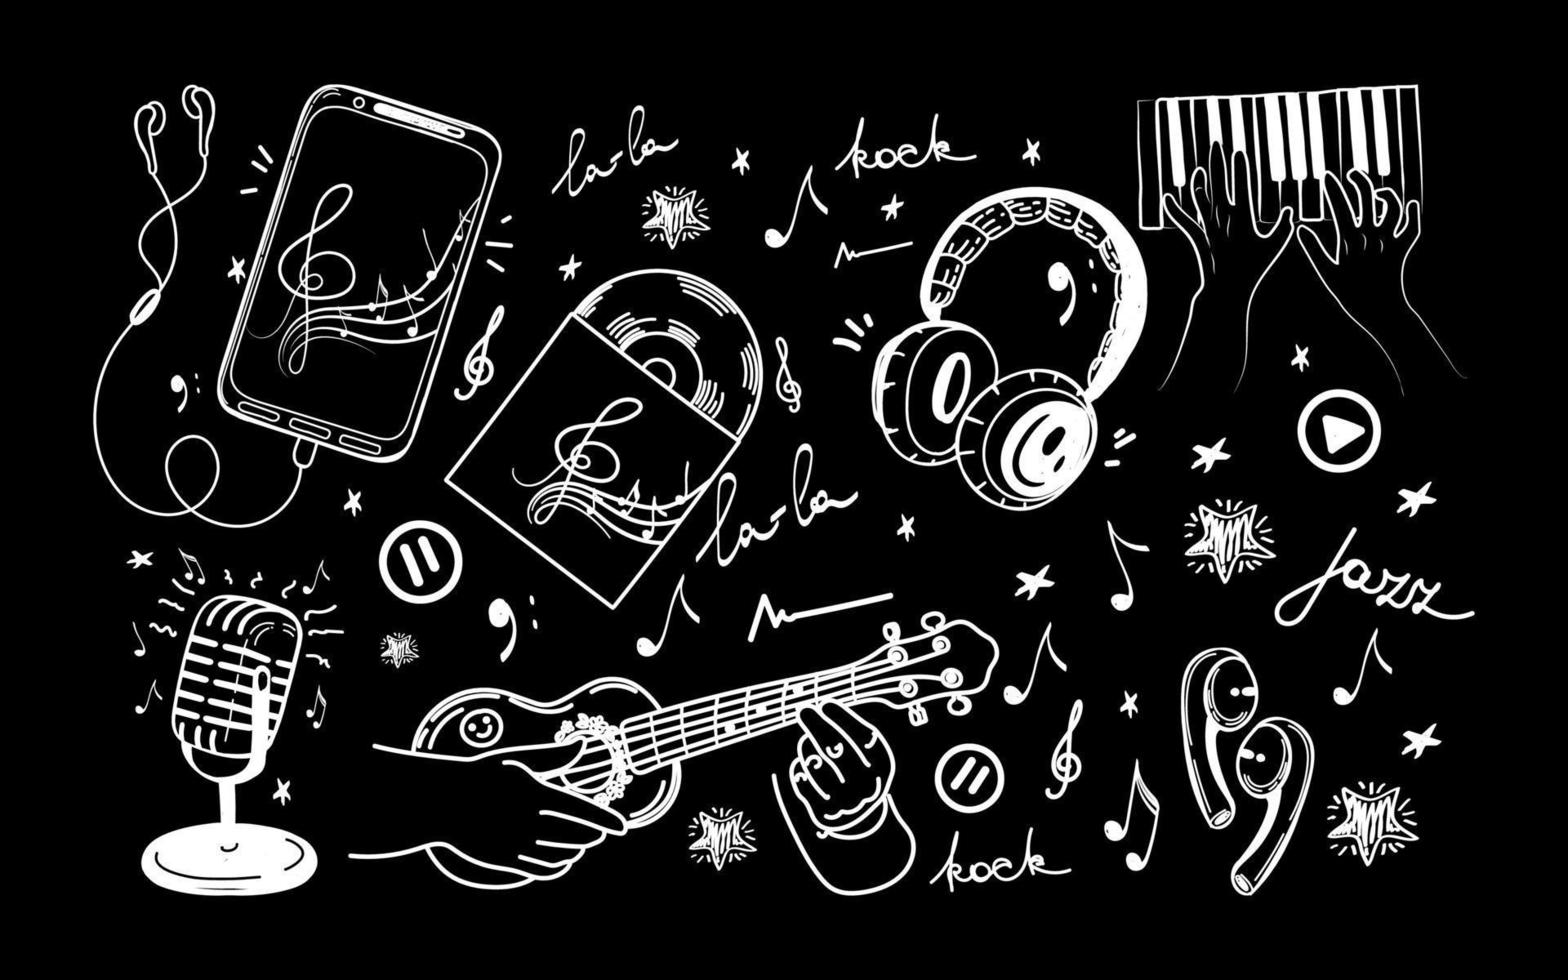 ensemble d'éléments musicaux dessinés à la main dans un style de croquis. guitare, piano. écouteurs, microphones, cd, audio, vinyle, clé de violon avec notes et icônes d'enregistrement. illustration vectorielle sur fond noir vecteur